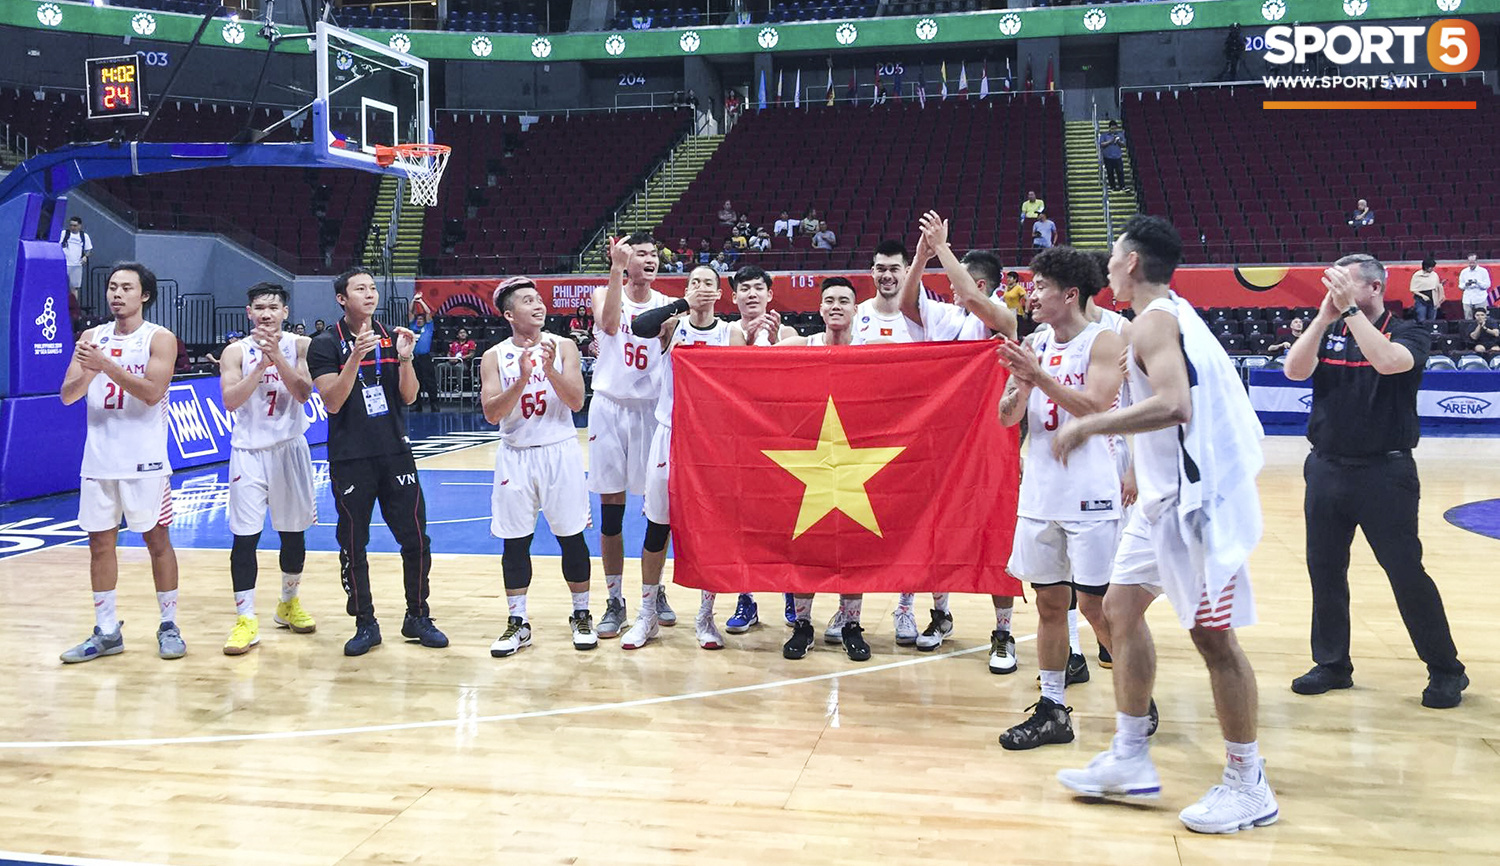 Chùm ảnh dấu ấn lịch sử của bóng rổ Việt Nam: Đả bại Singapore, lần đầu tiên góp mặt tại bán kết SEA Games - Ảnh 12.